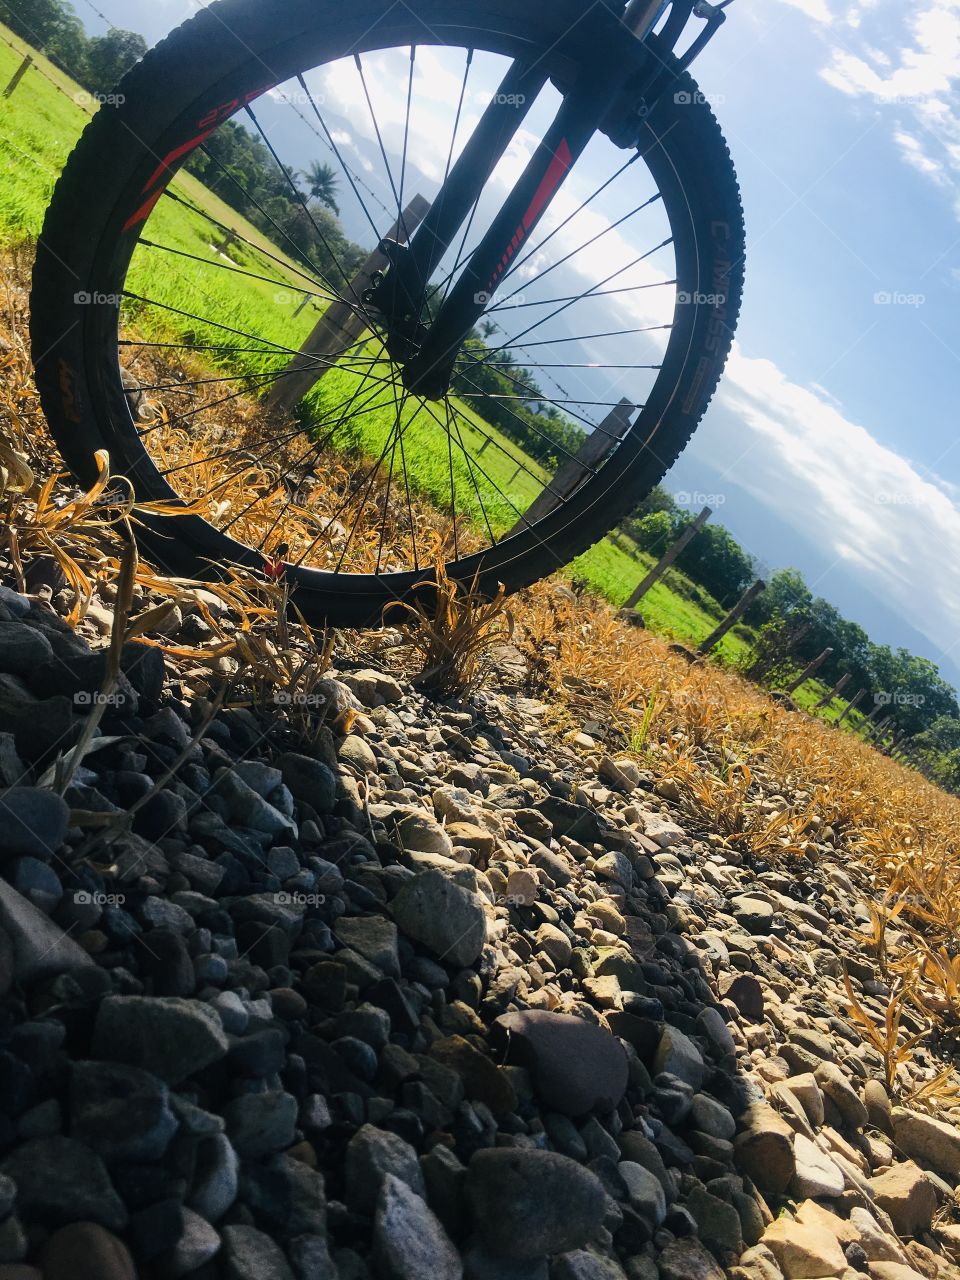 En esta foto a color, se ve la parte delantera de una bicicleta y un paisaje de día soleado. Resaltan los colores azul y blanco del cielo, verde oscuro y lima de la vegetación y amarillo pálido de las rocas y el pasto de la base de la imagen.